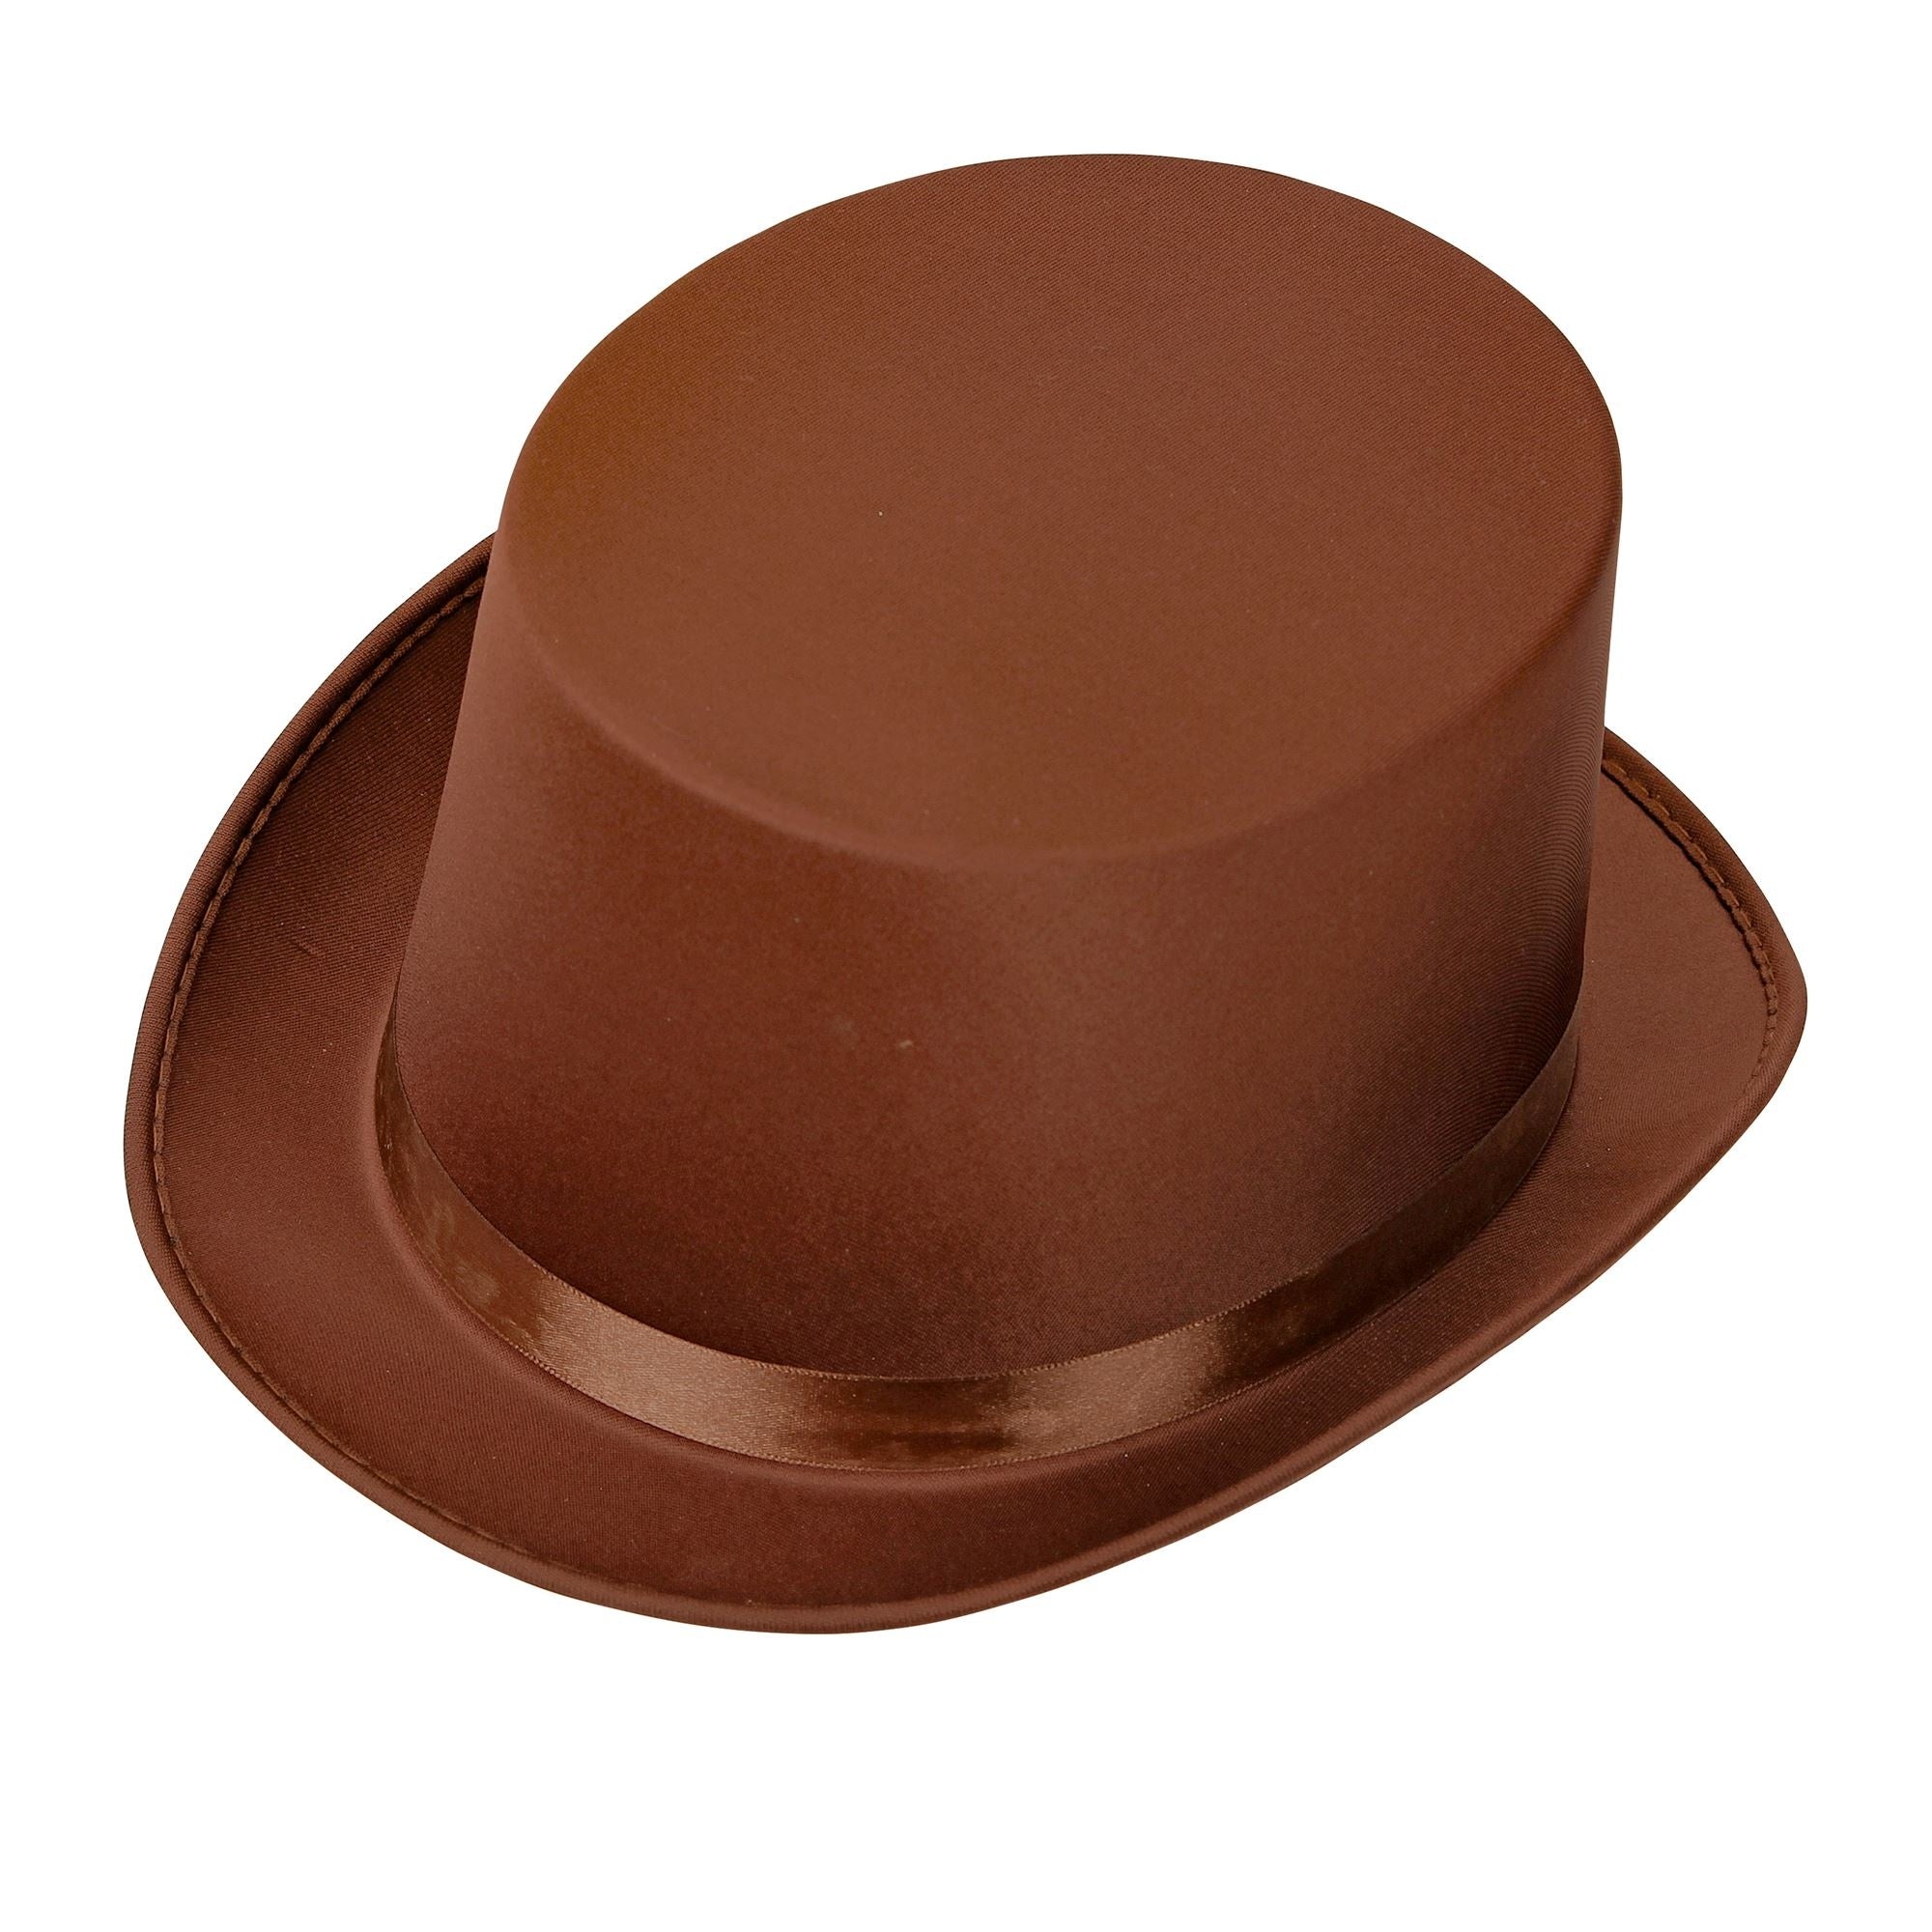 Mooie bruine hoge hoed in een vintage look